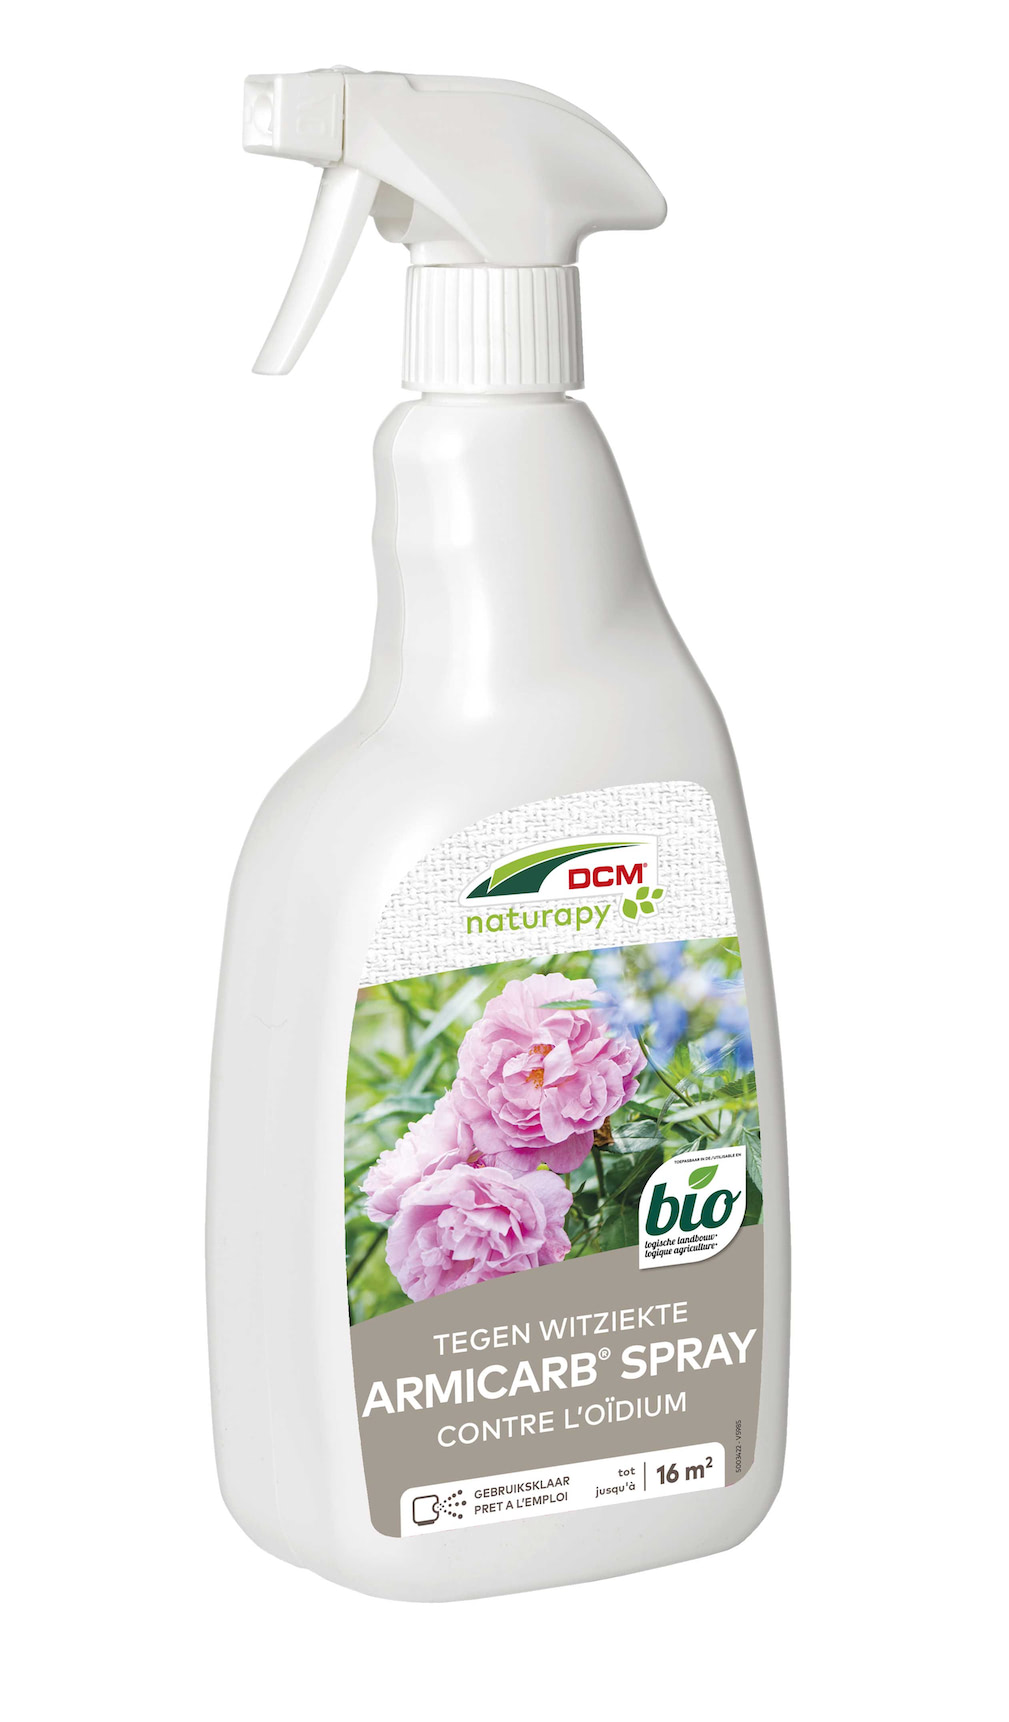 Meeldauw bestrijden op rozen met DCM spray 1 L